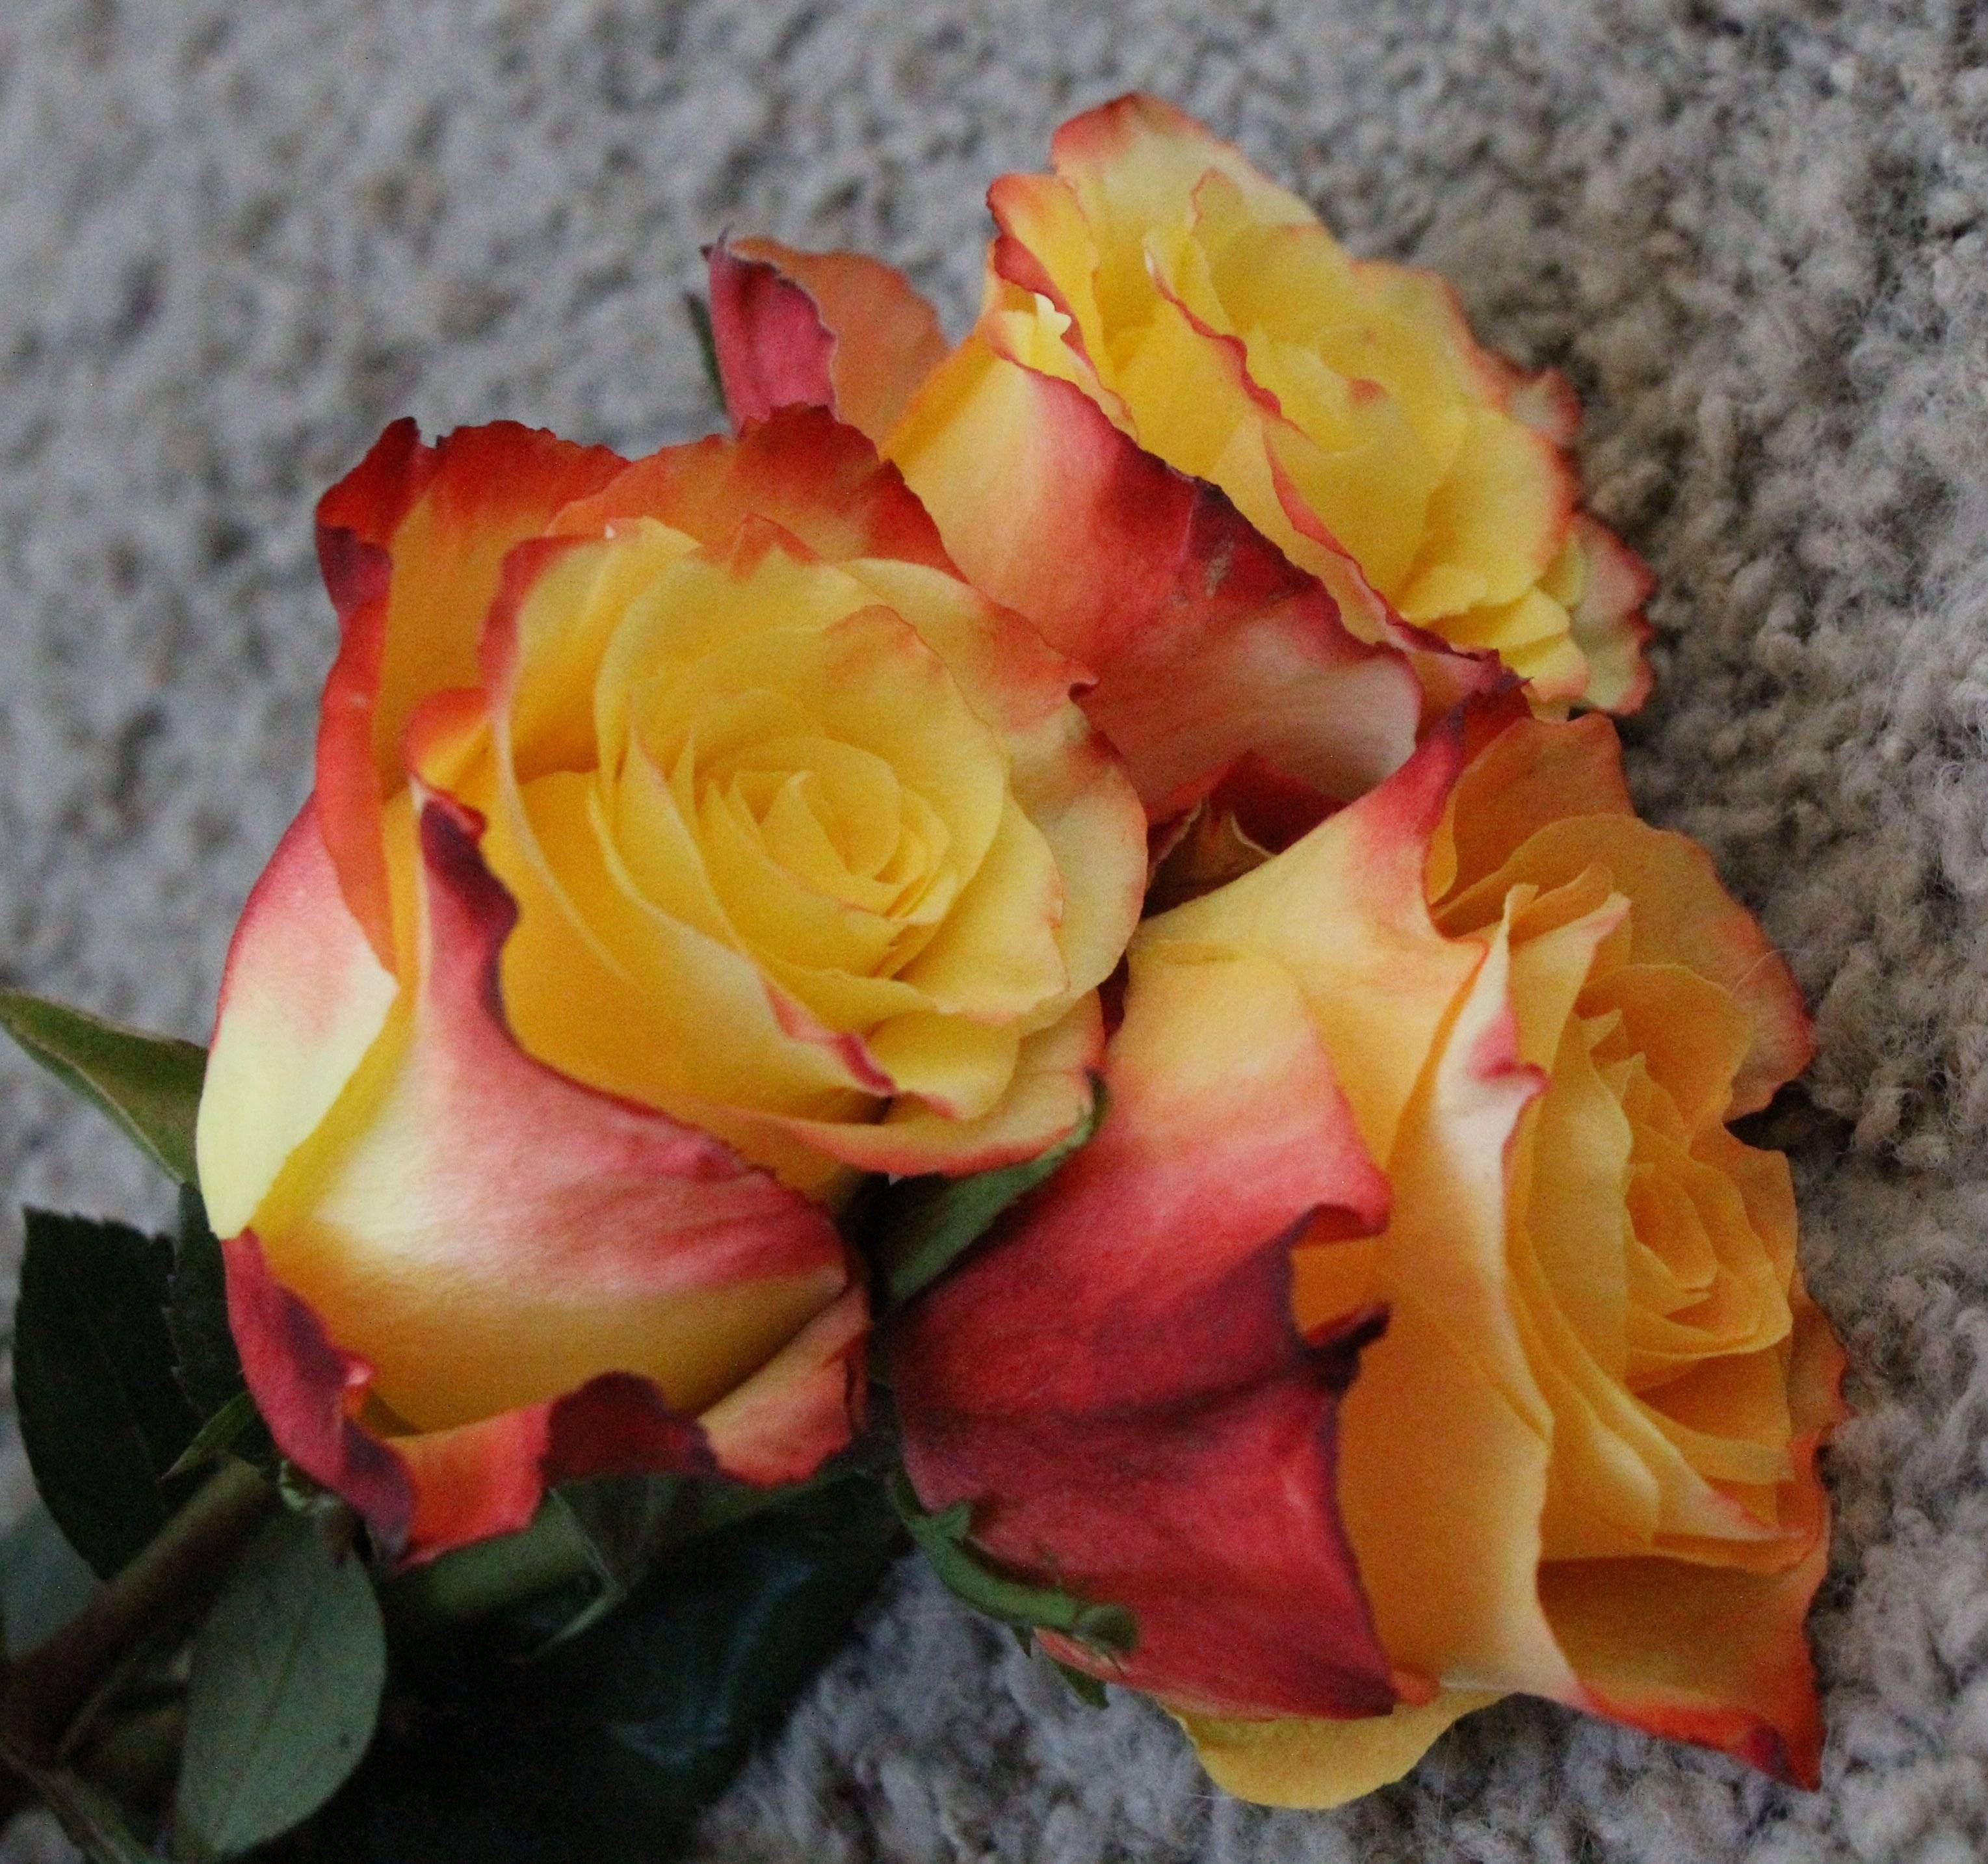 Роза хай мэджик: описание сорта, фото растения, отзывы